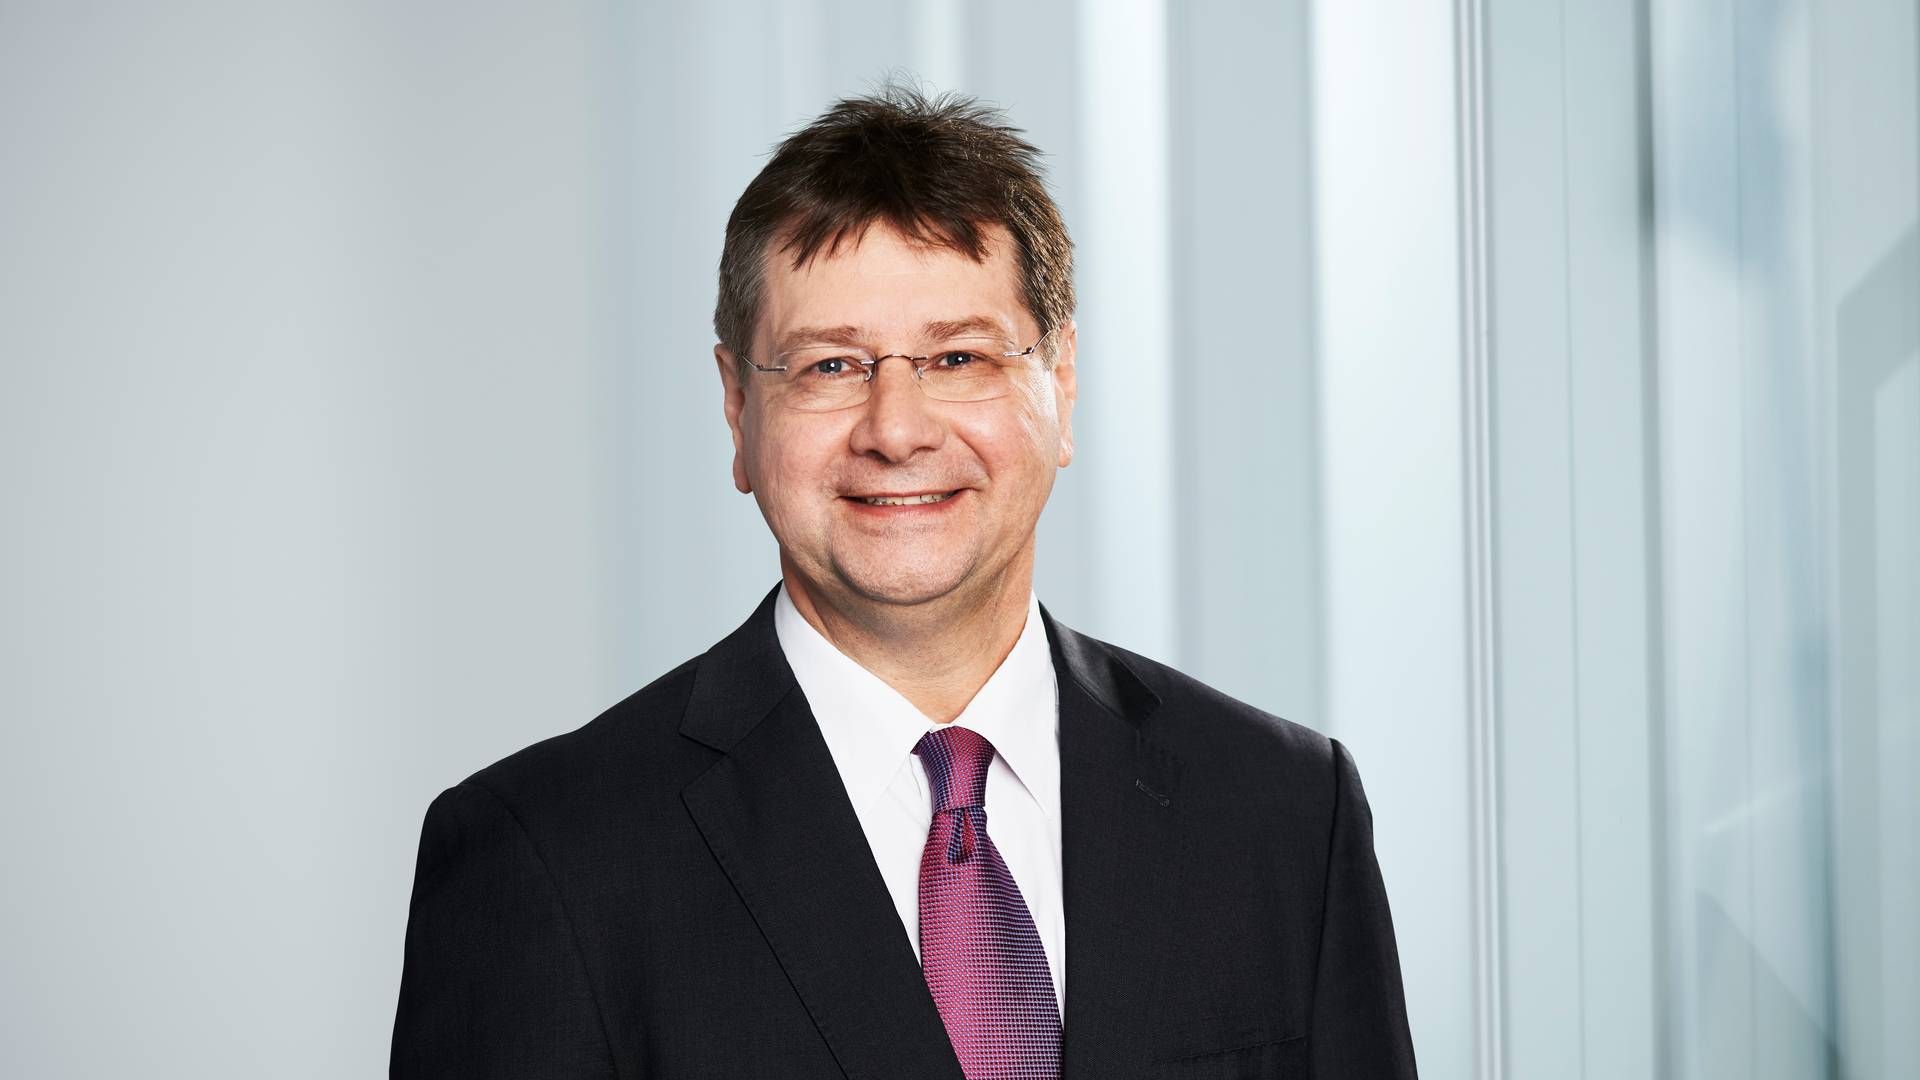 Peter Kohls ist neues Vorstandsmitglied der Frankfurter Bankgesellschaft. | Foto: Frankfurter Bankgesellschaft